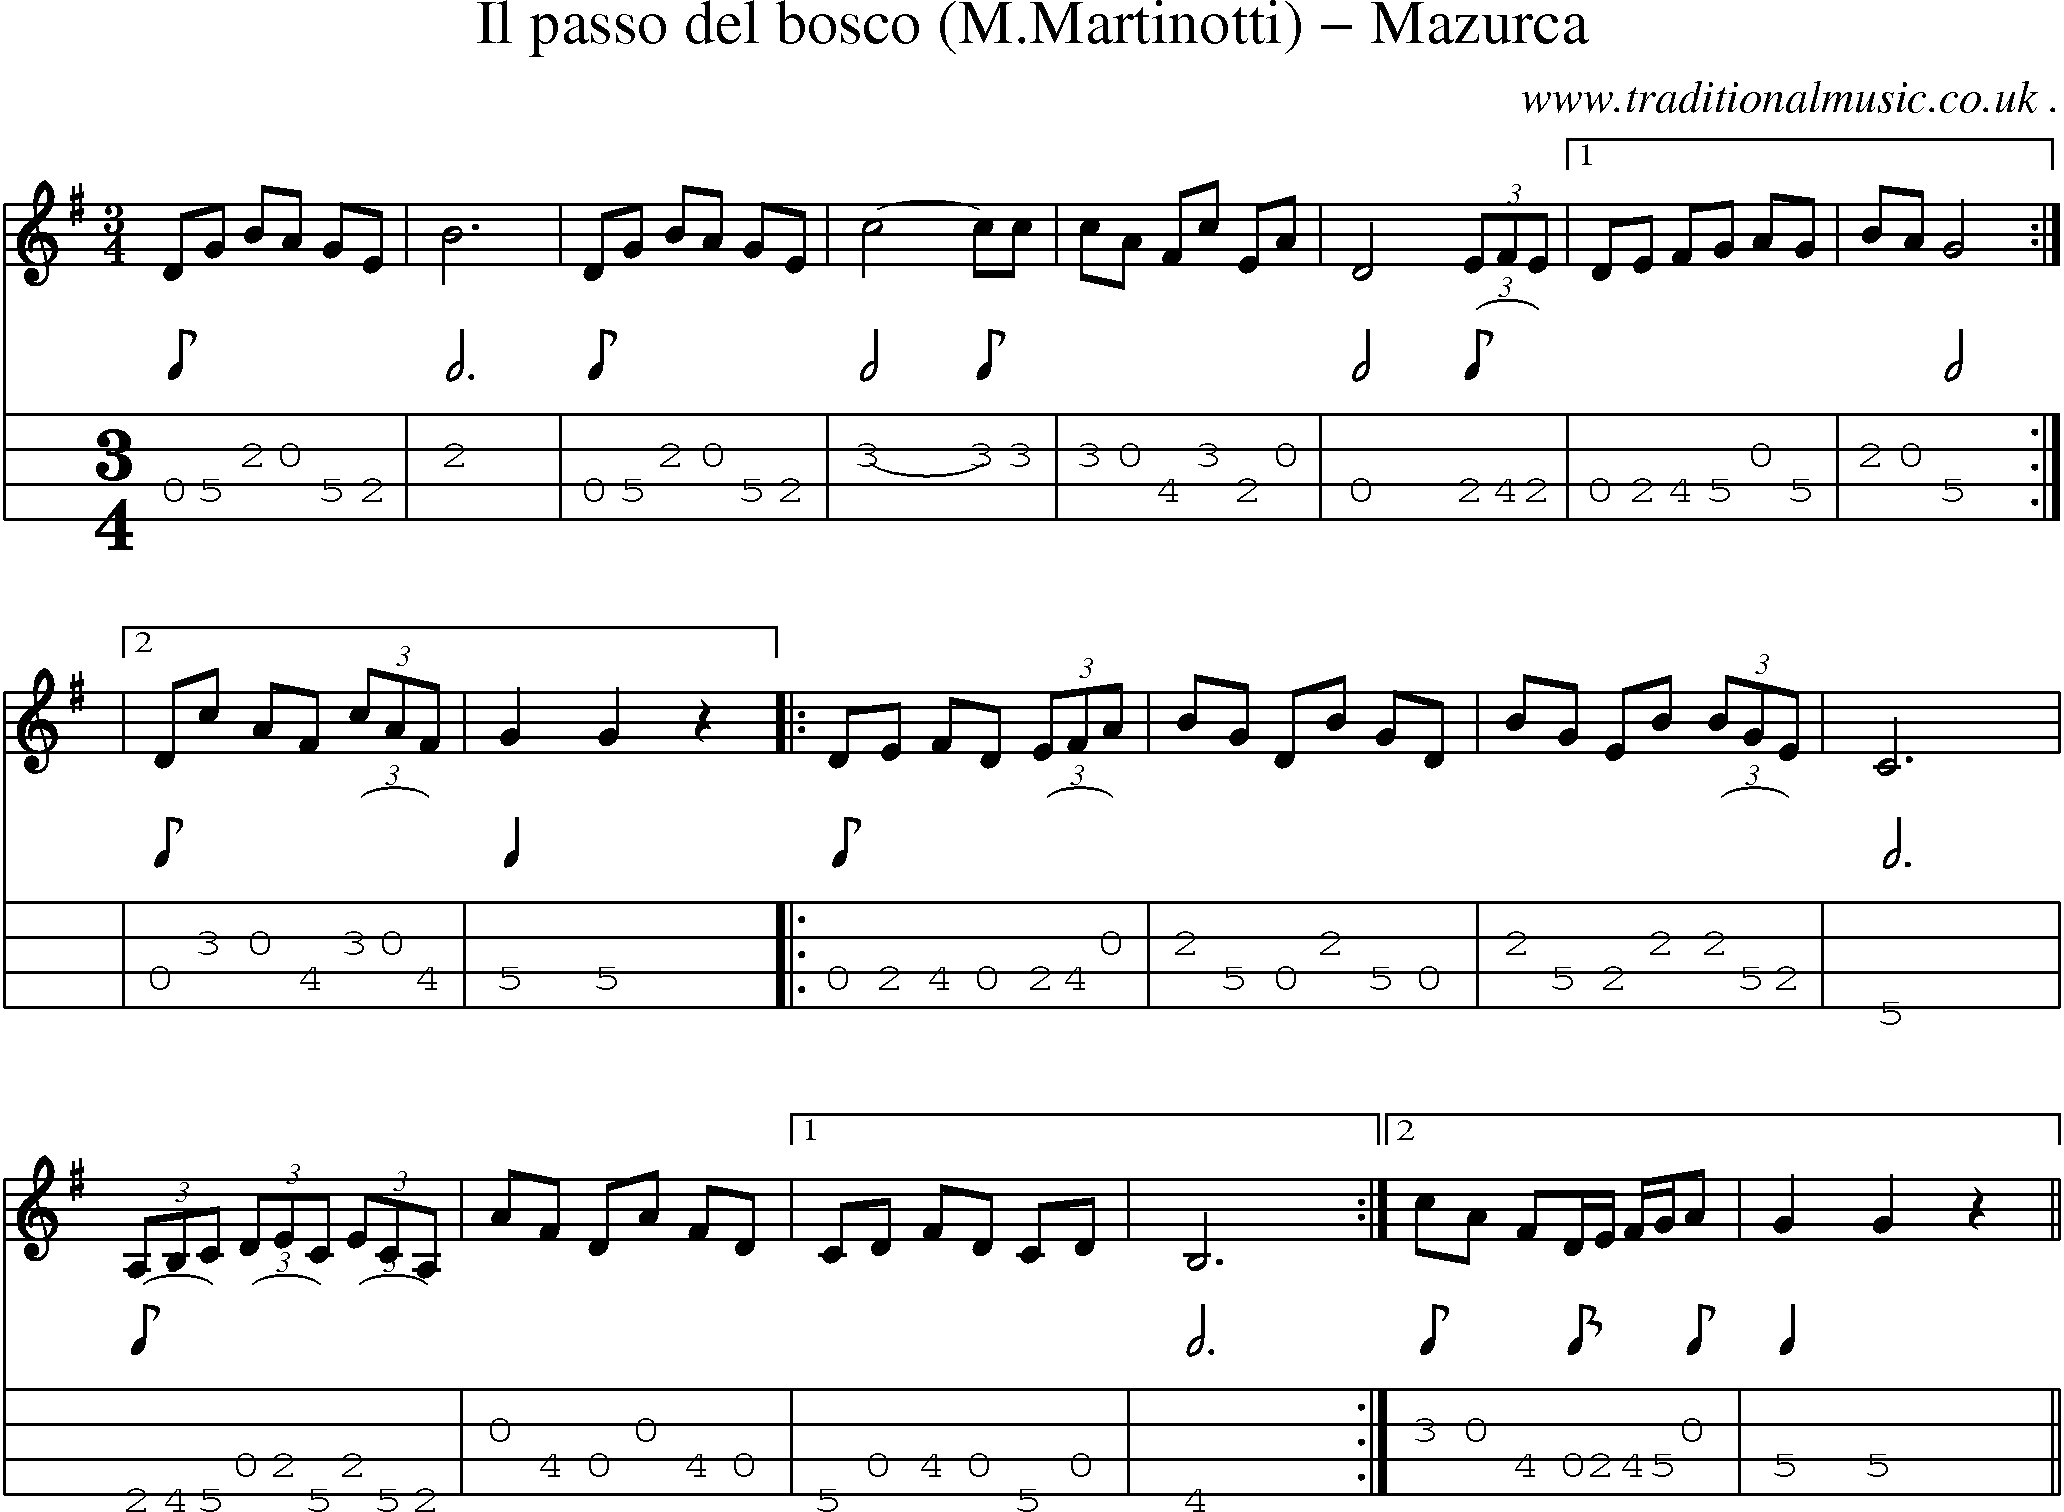 Sheet-Music and Mandolin Tabs for Il Passo Del Bosco (mmartinotti) Mazurca